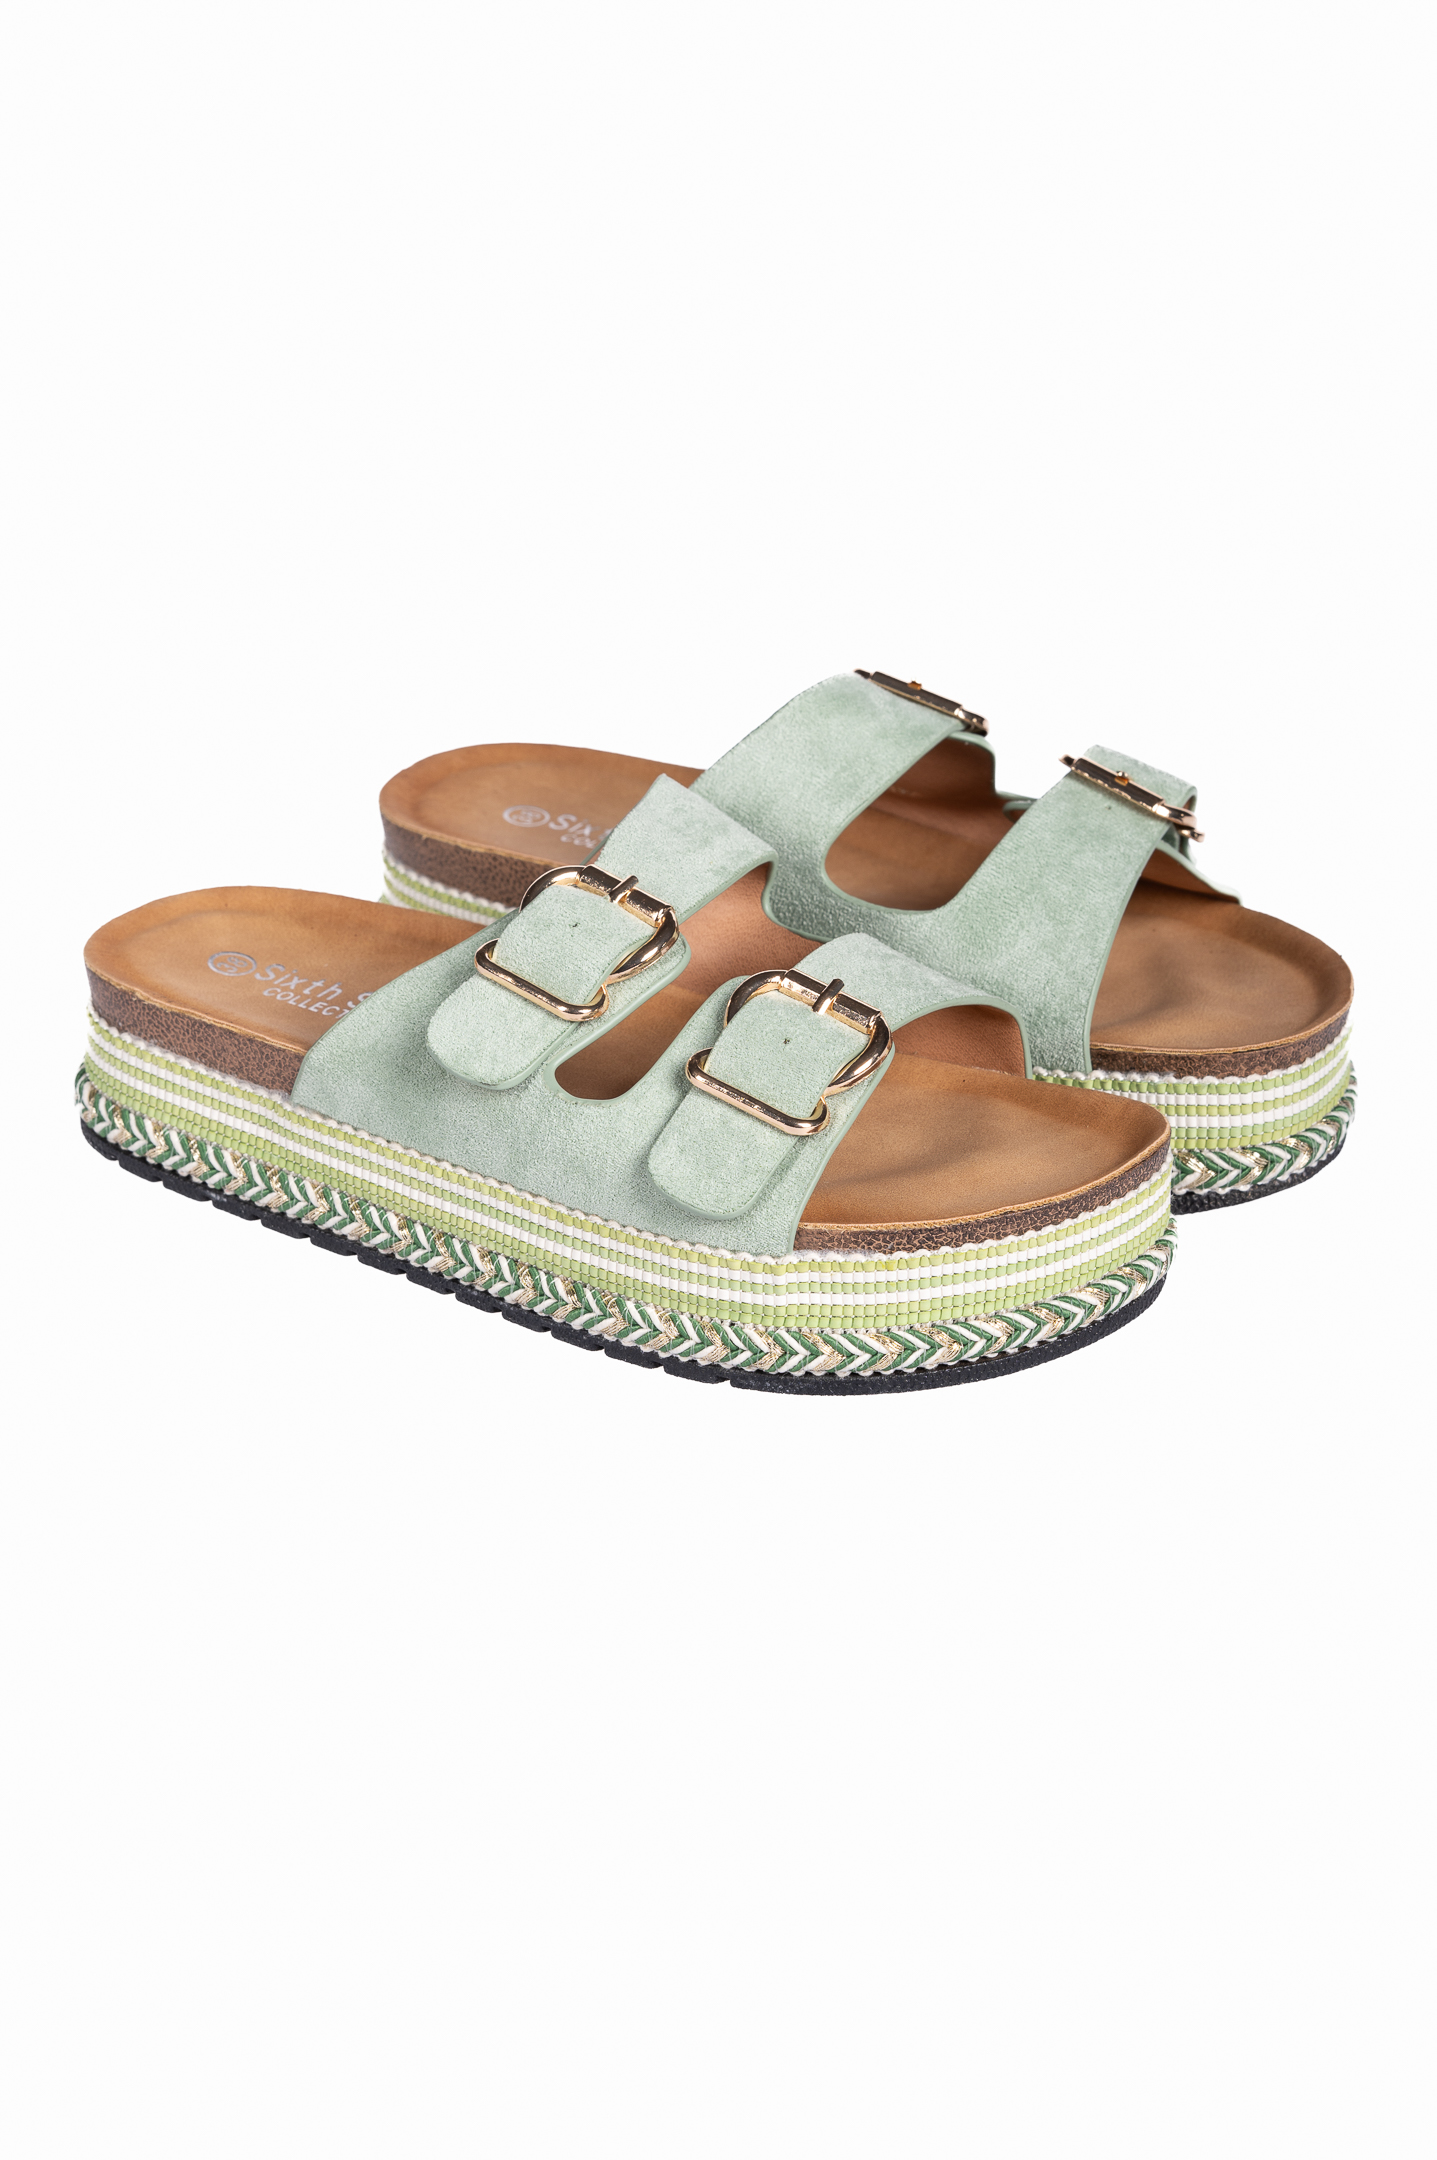 Παπούτσια > Σανδάλια Δίπατα σανδάλια flatform με suede υφή - Πράσινο